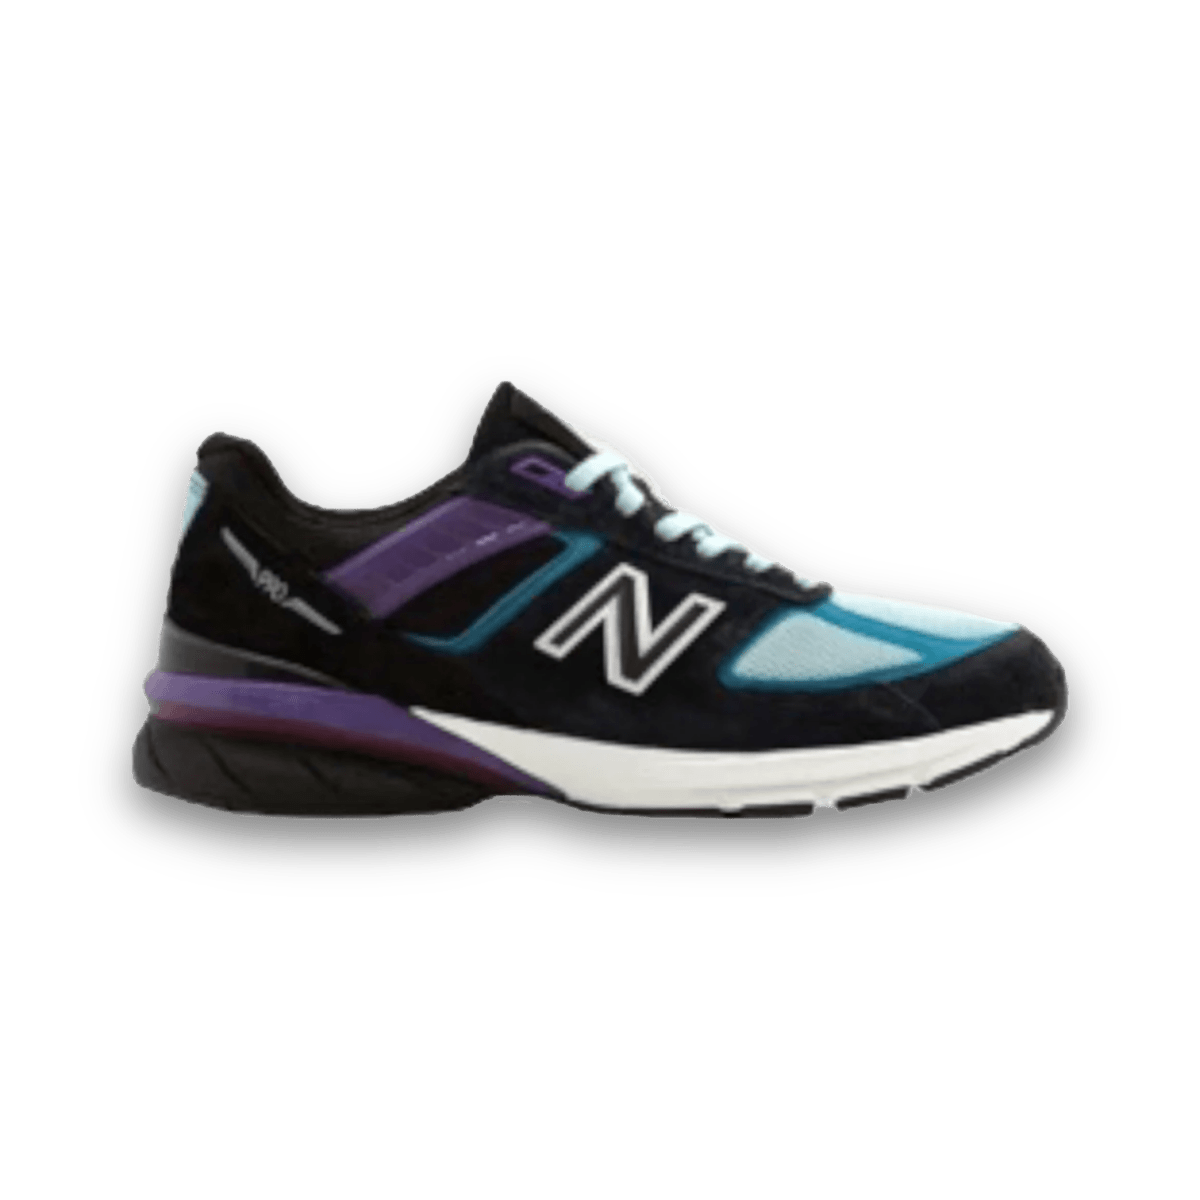 New Balance 990v5 - Aqua - Low Sneaker - Jawns on Fire Sneakers & Streetwear